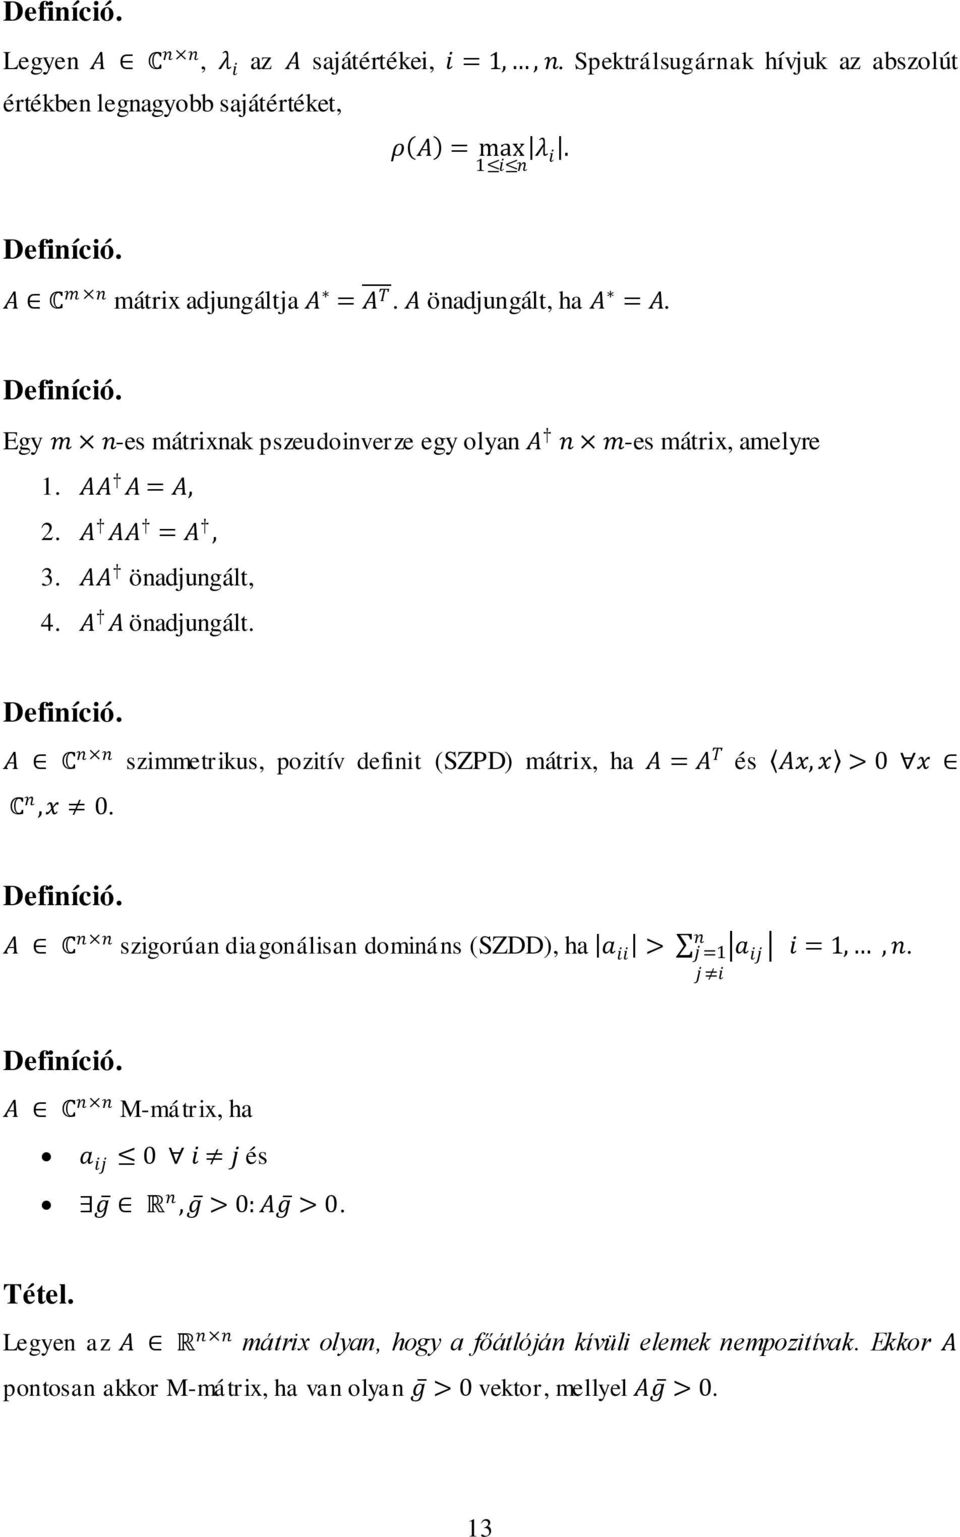 A A önadjungált. Definíció. A C n n szimmetrikus, pozitív definit (SZPD) mátrix, ha A = A T és Ax, x > x C n,x. Definíció. A C n n szigorúan diagonálisan domináns (SZDD), ha a ii > n j = j i a ij i =,, n.